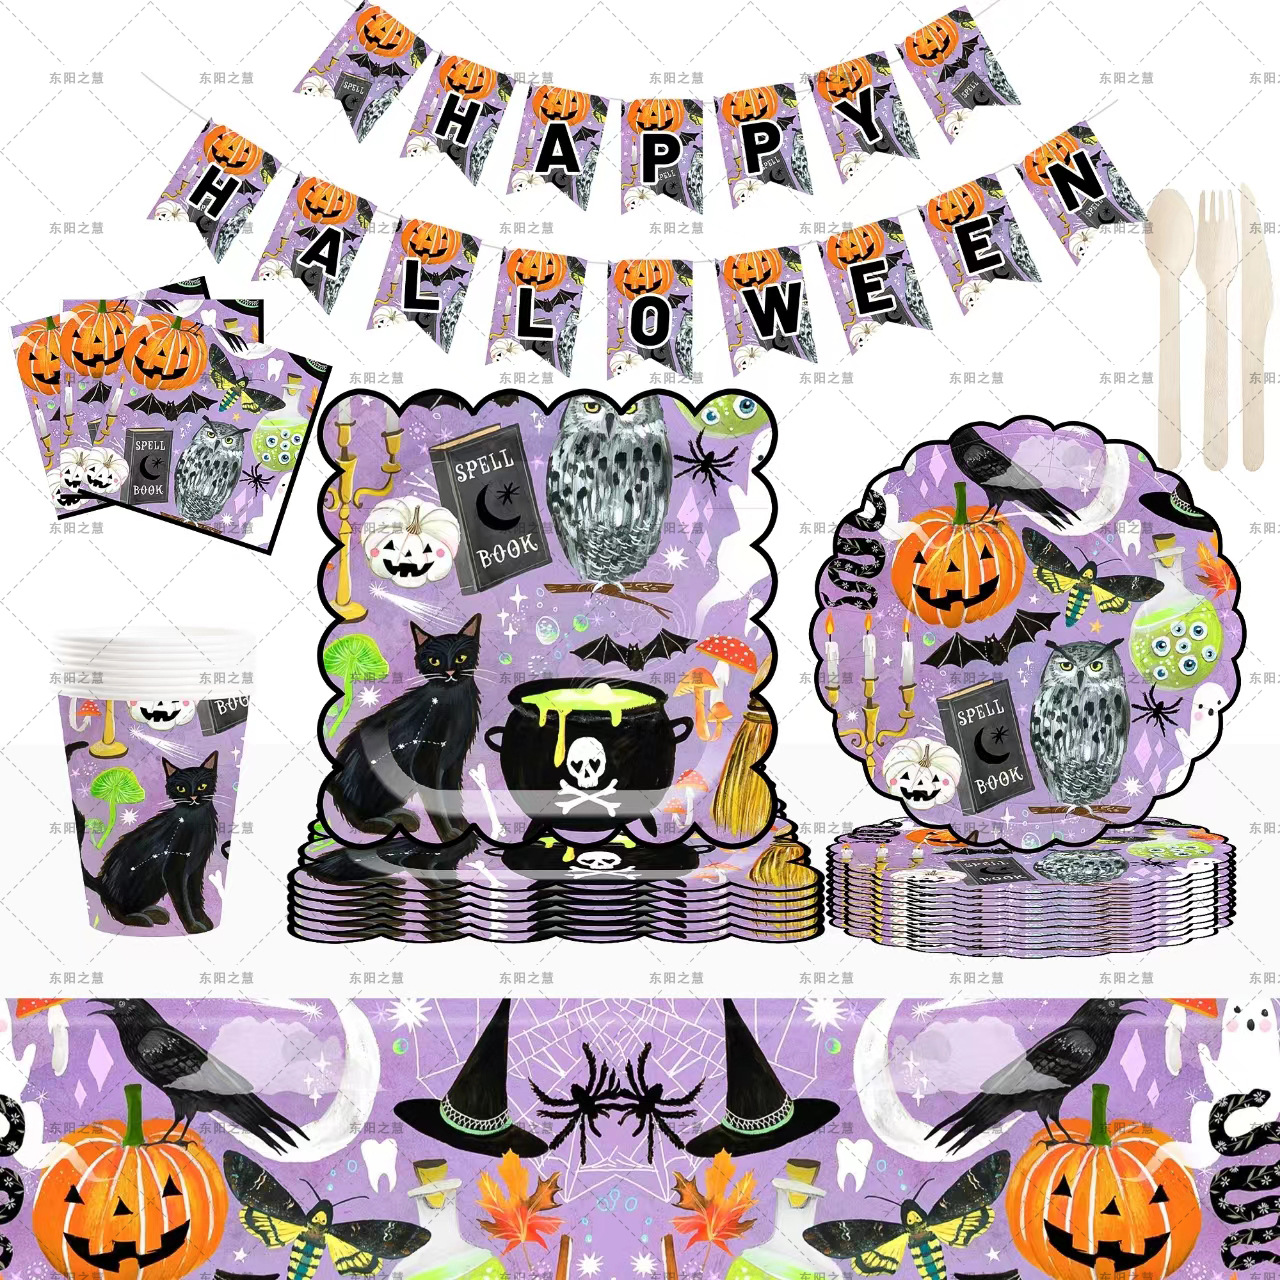 新品紫色万圣节主题派对餐具装饰鬼节一次性纸盘纸杯气球装饰套装